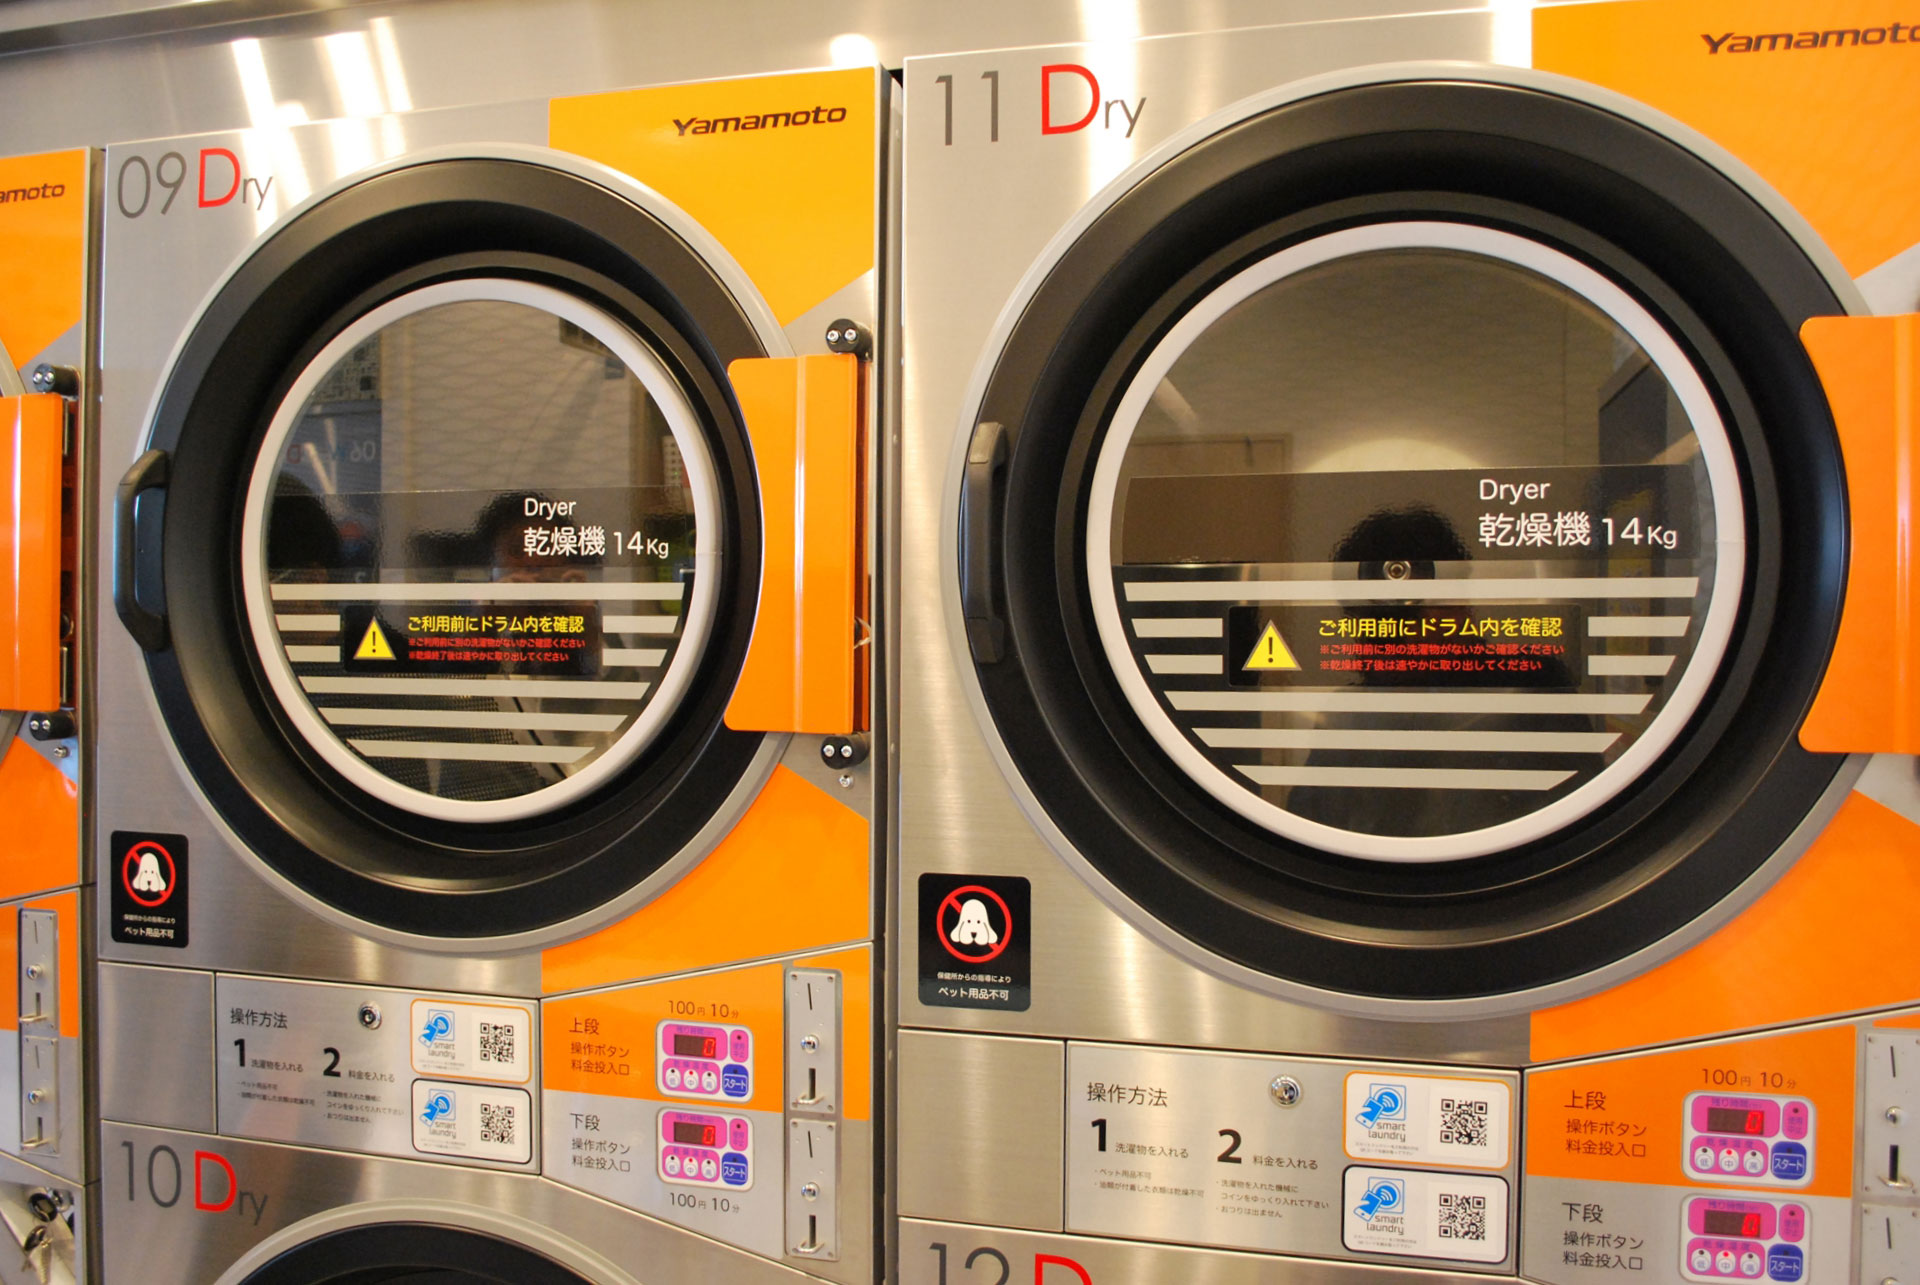 「Smart Laundry」システム搭載の乾燥機